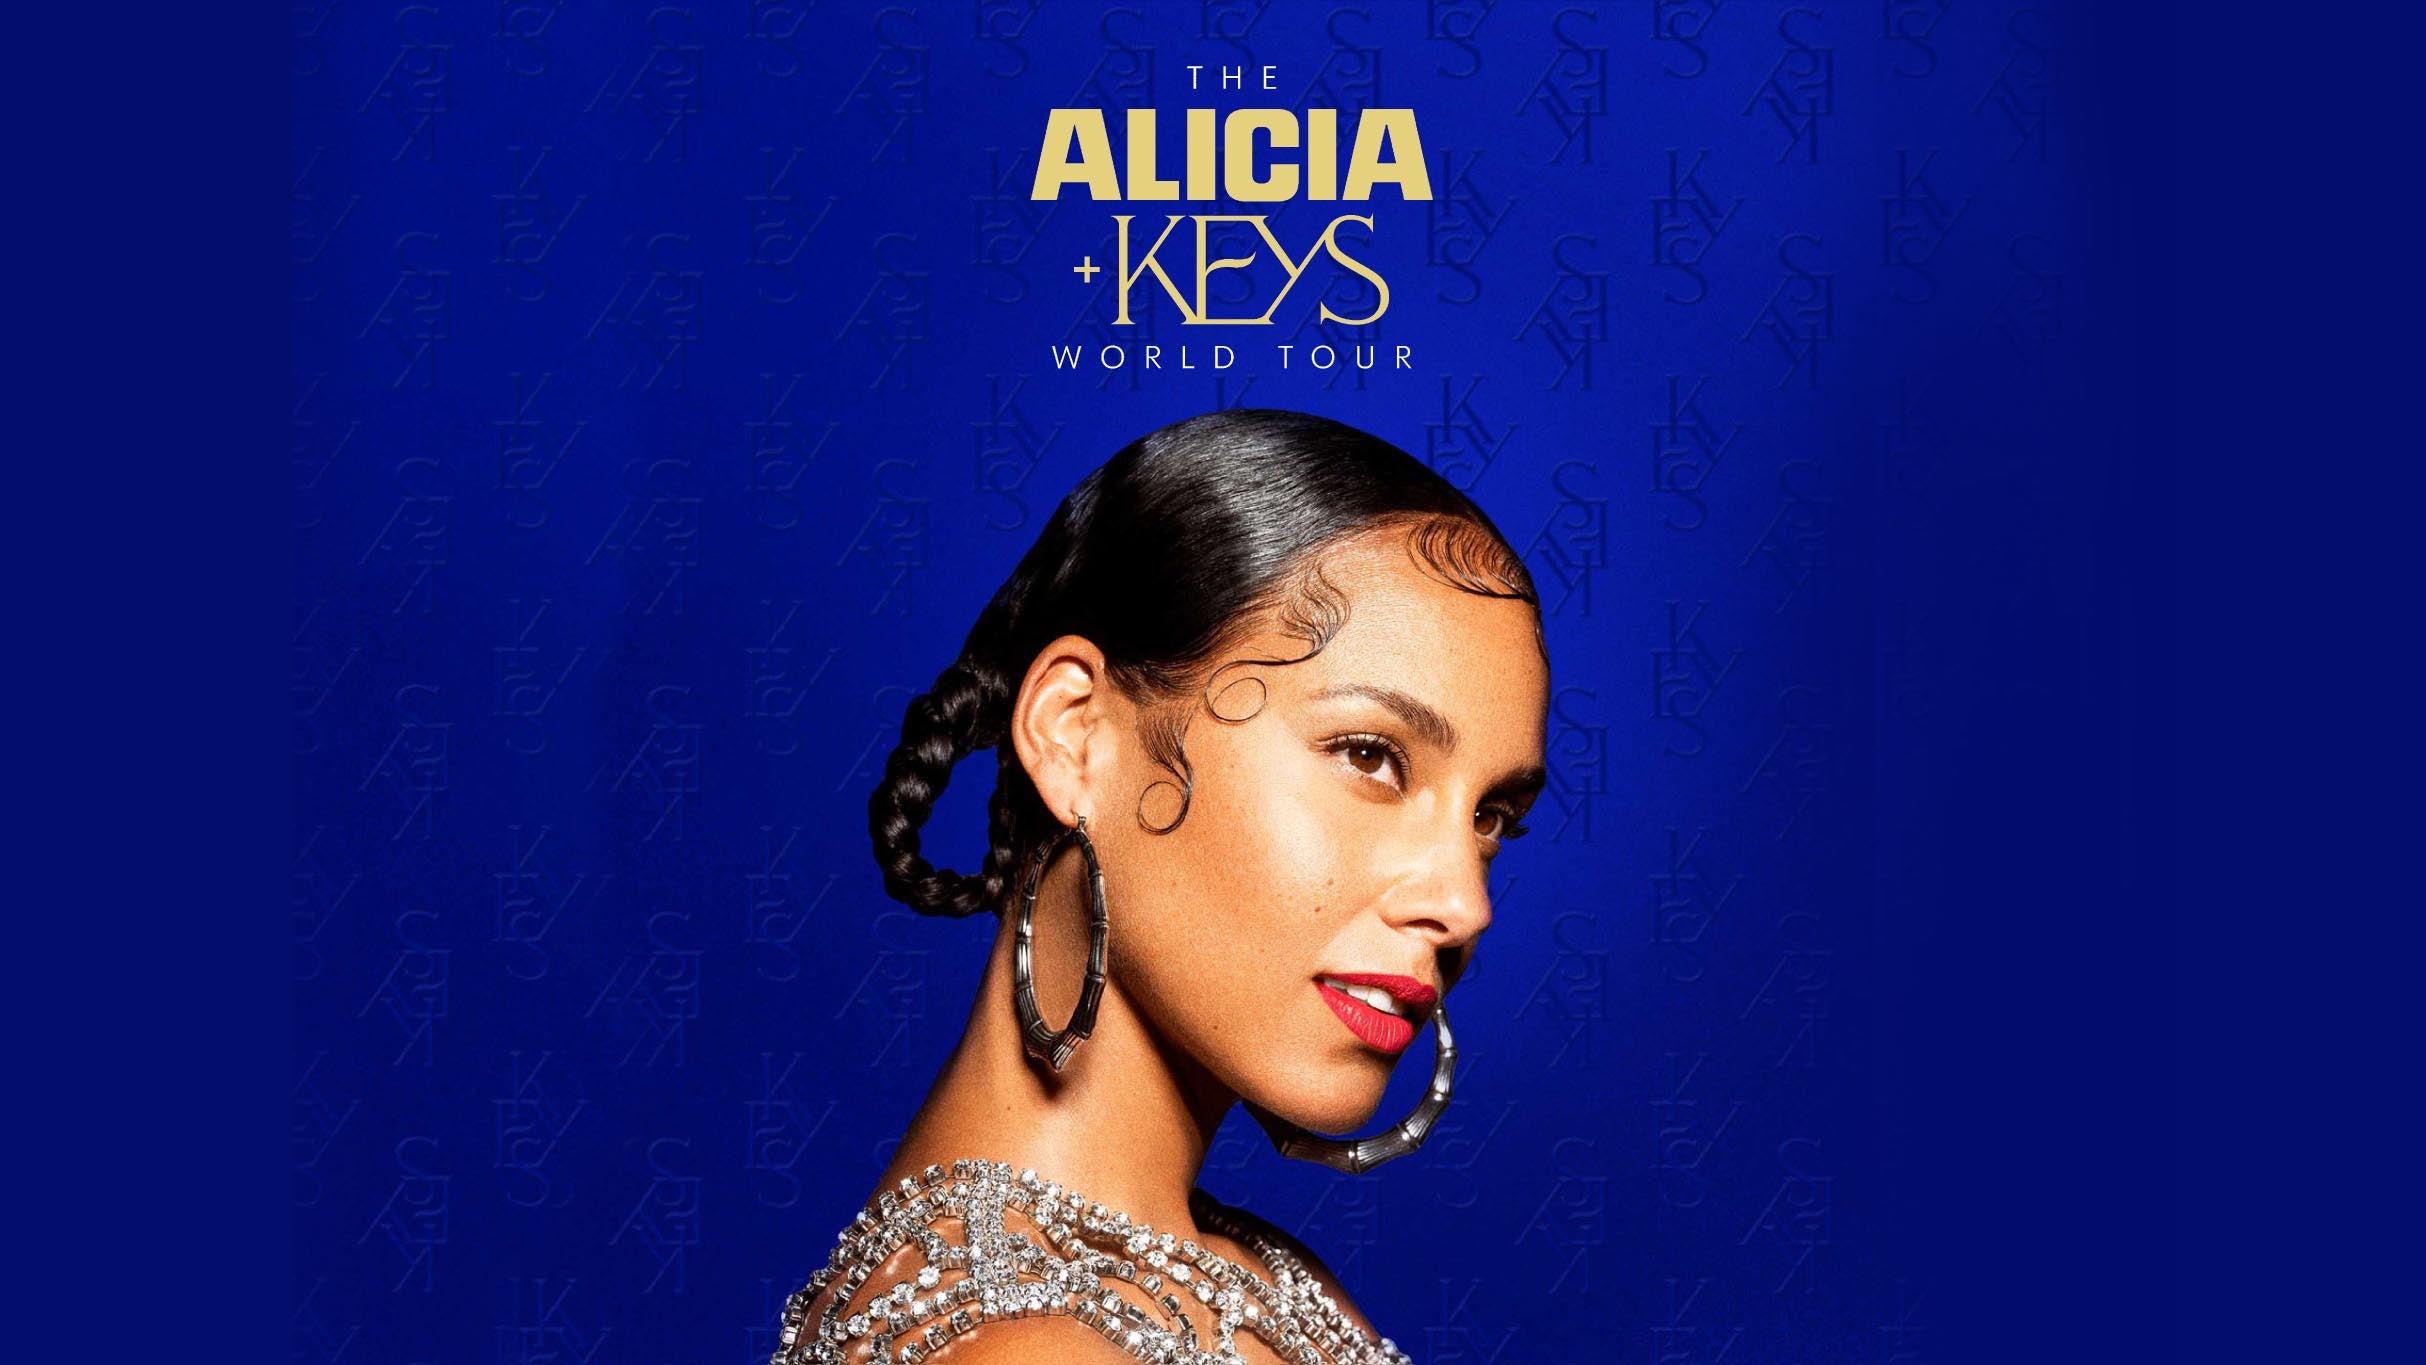 THE ALICIA + KEYS WORLD TOUR